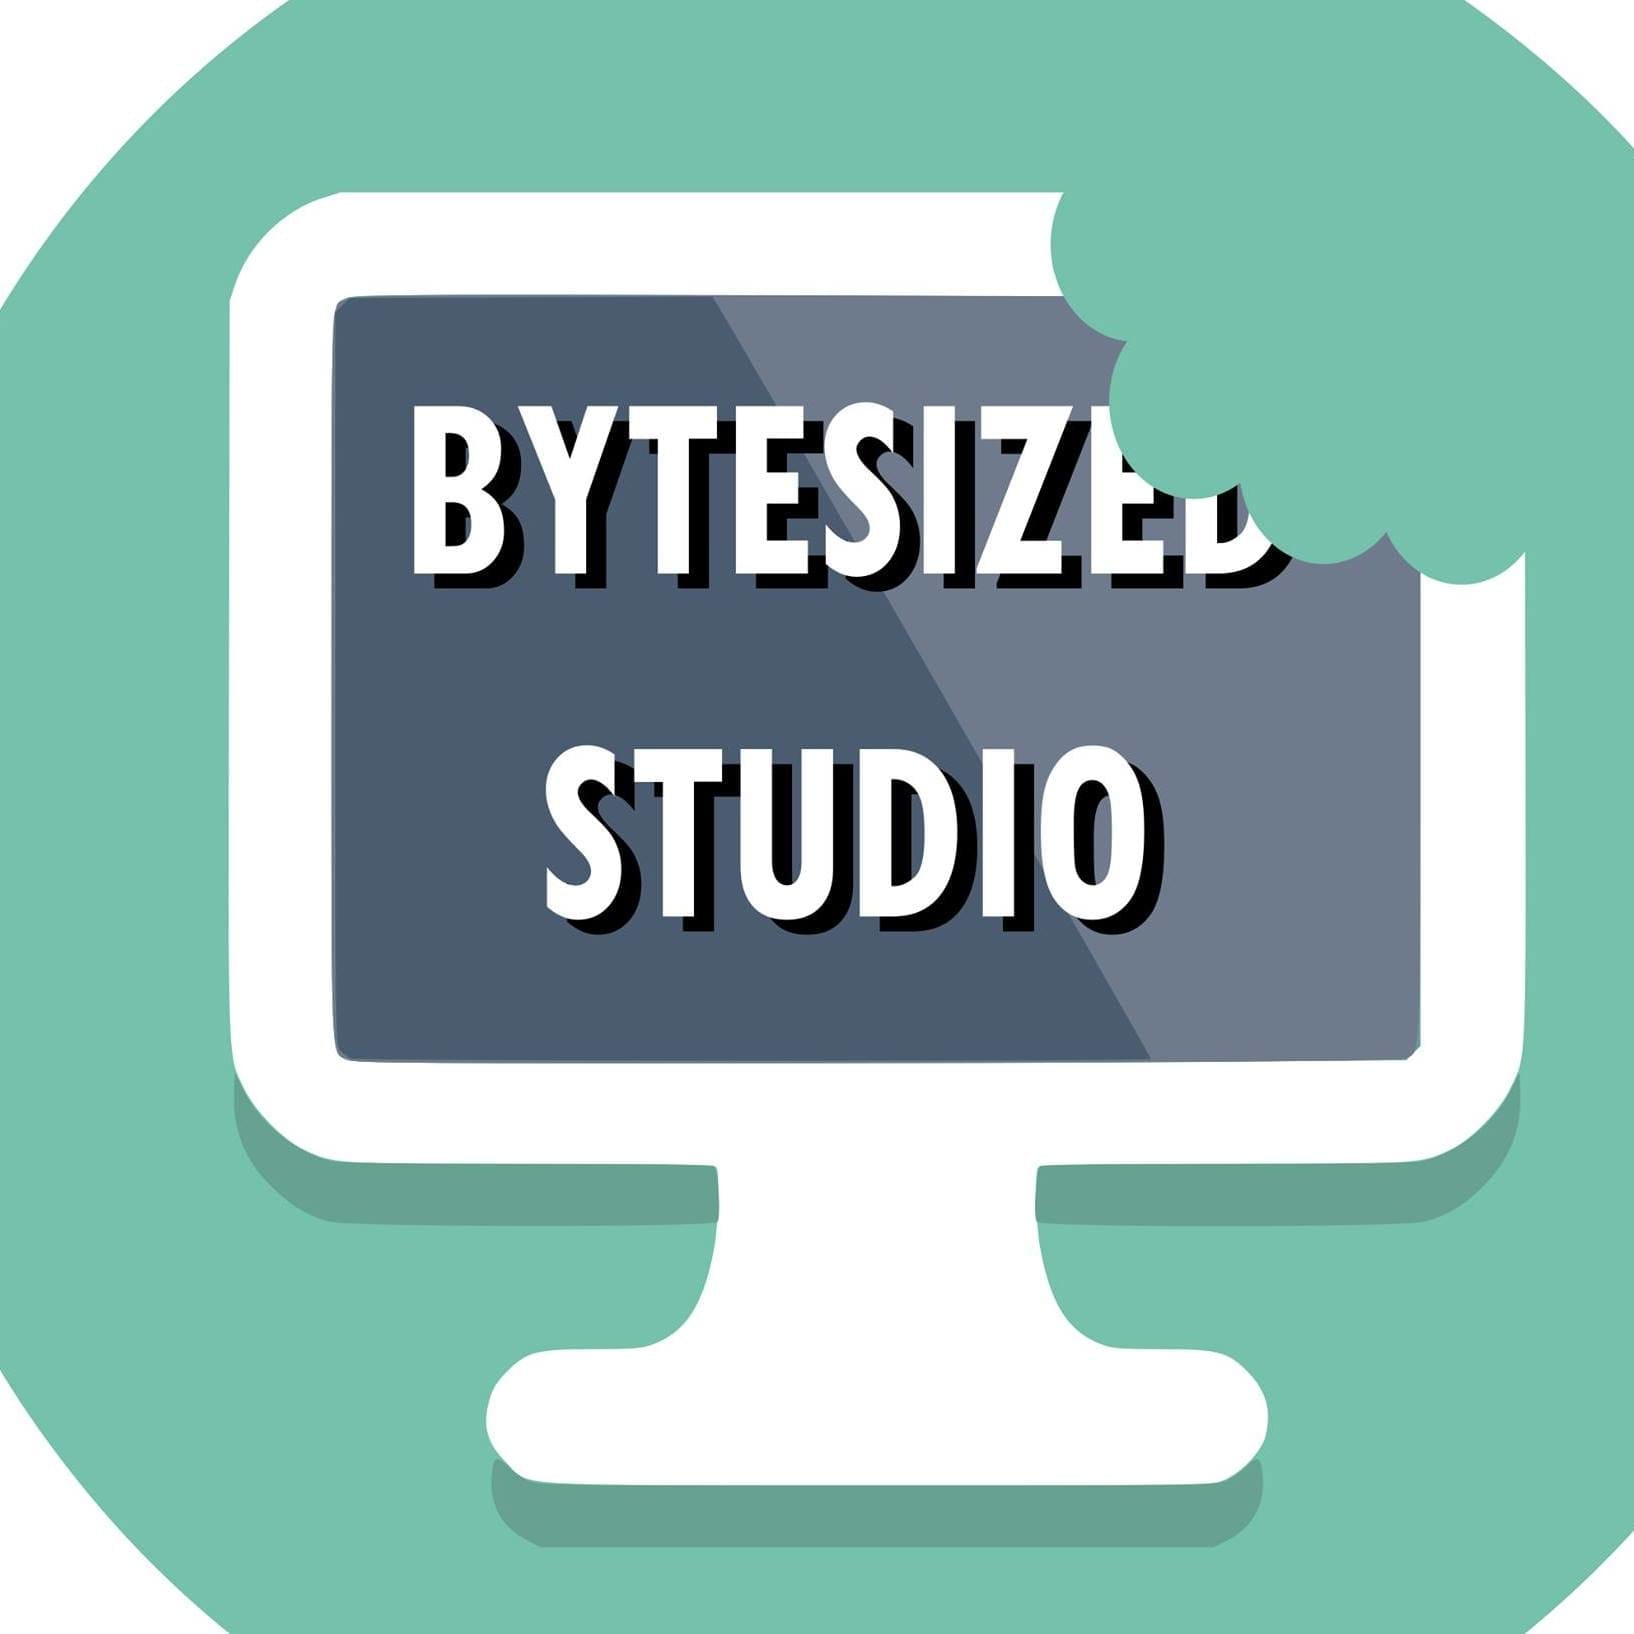 Bytsized Studio